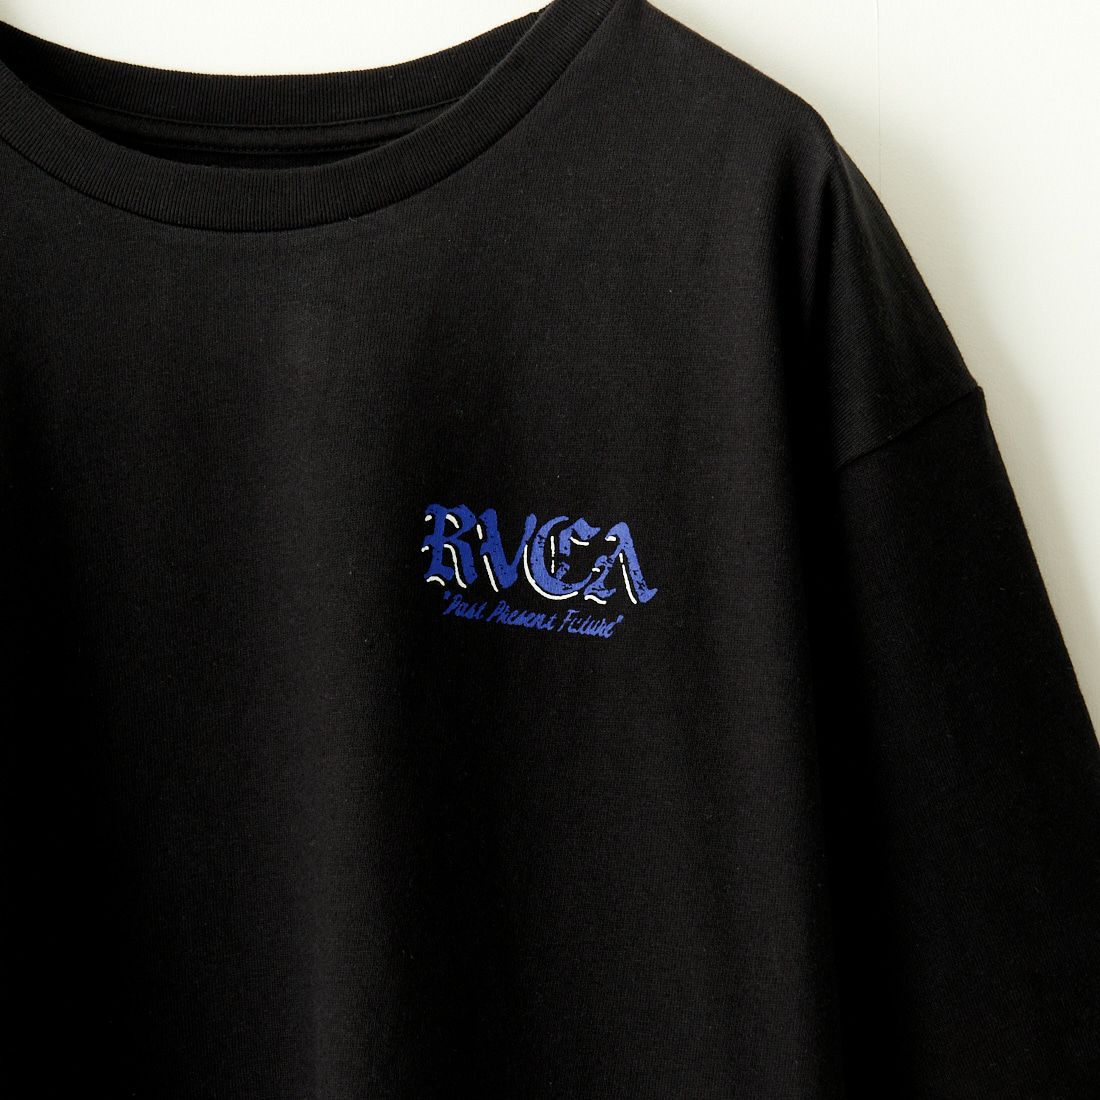 RVCA [ルーカ] ROSE CT Tシャツ [BE04A232] BLK